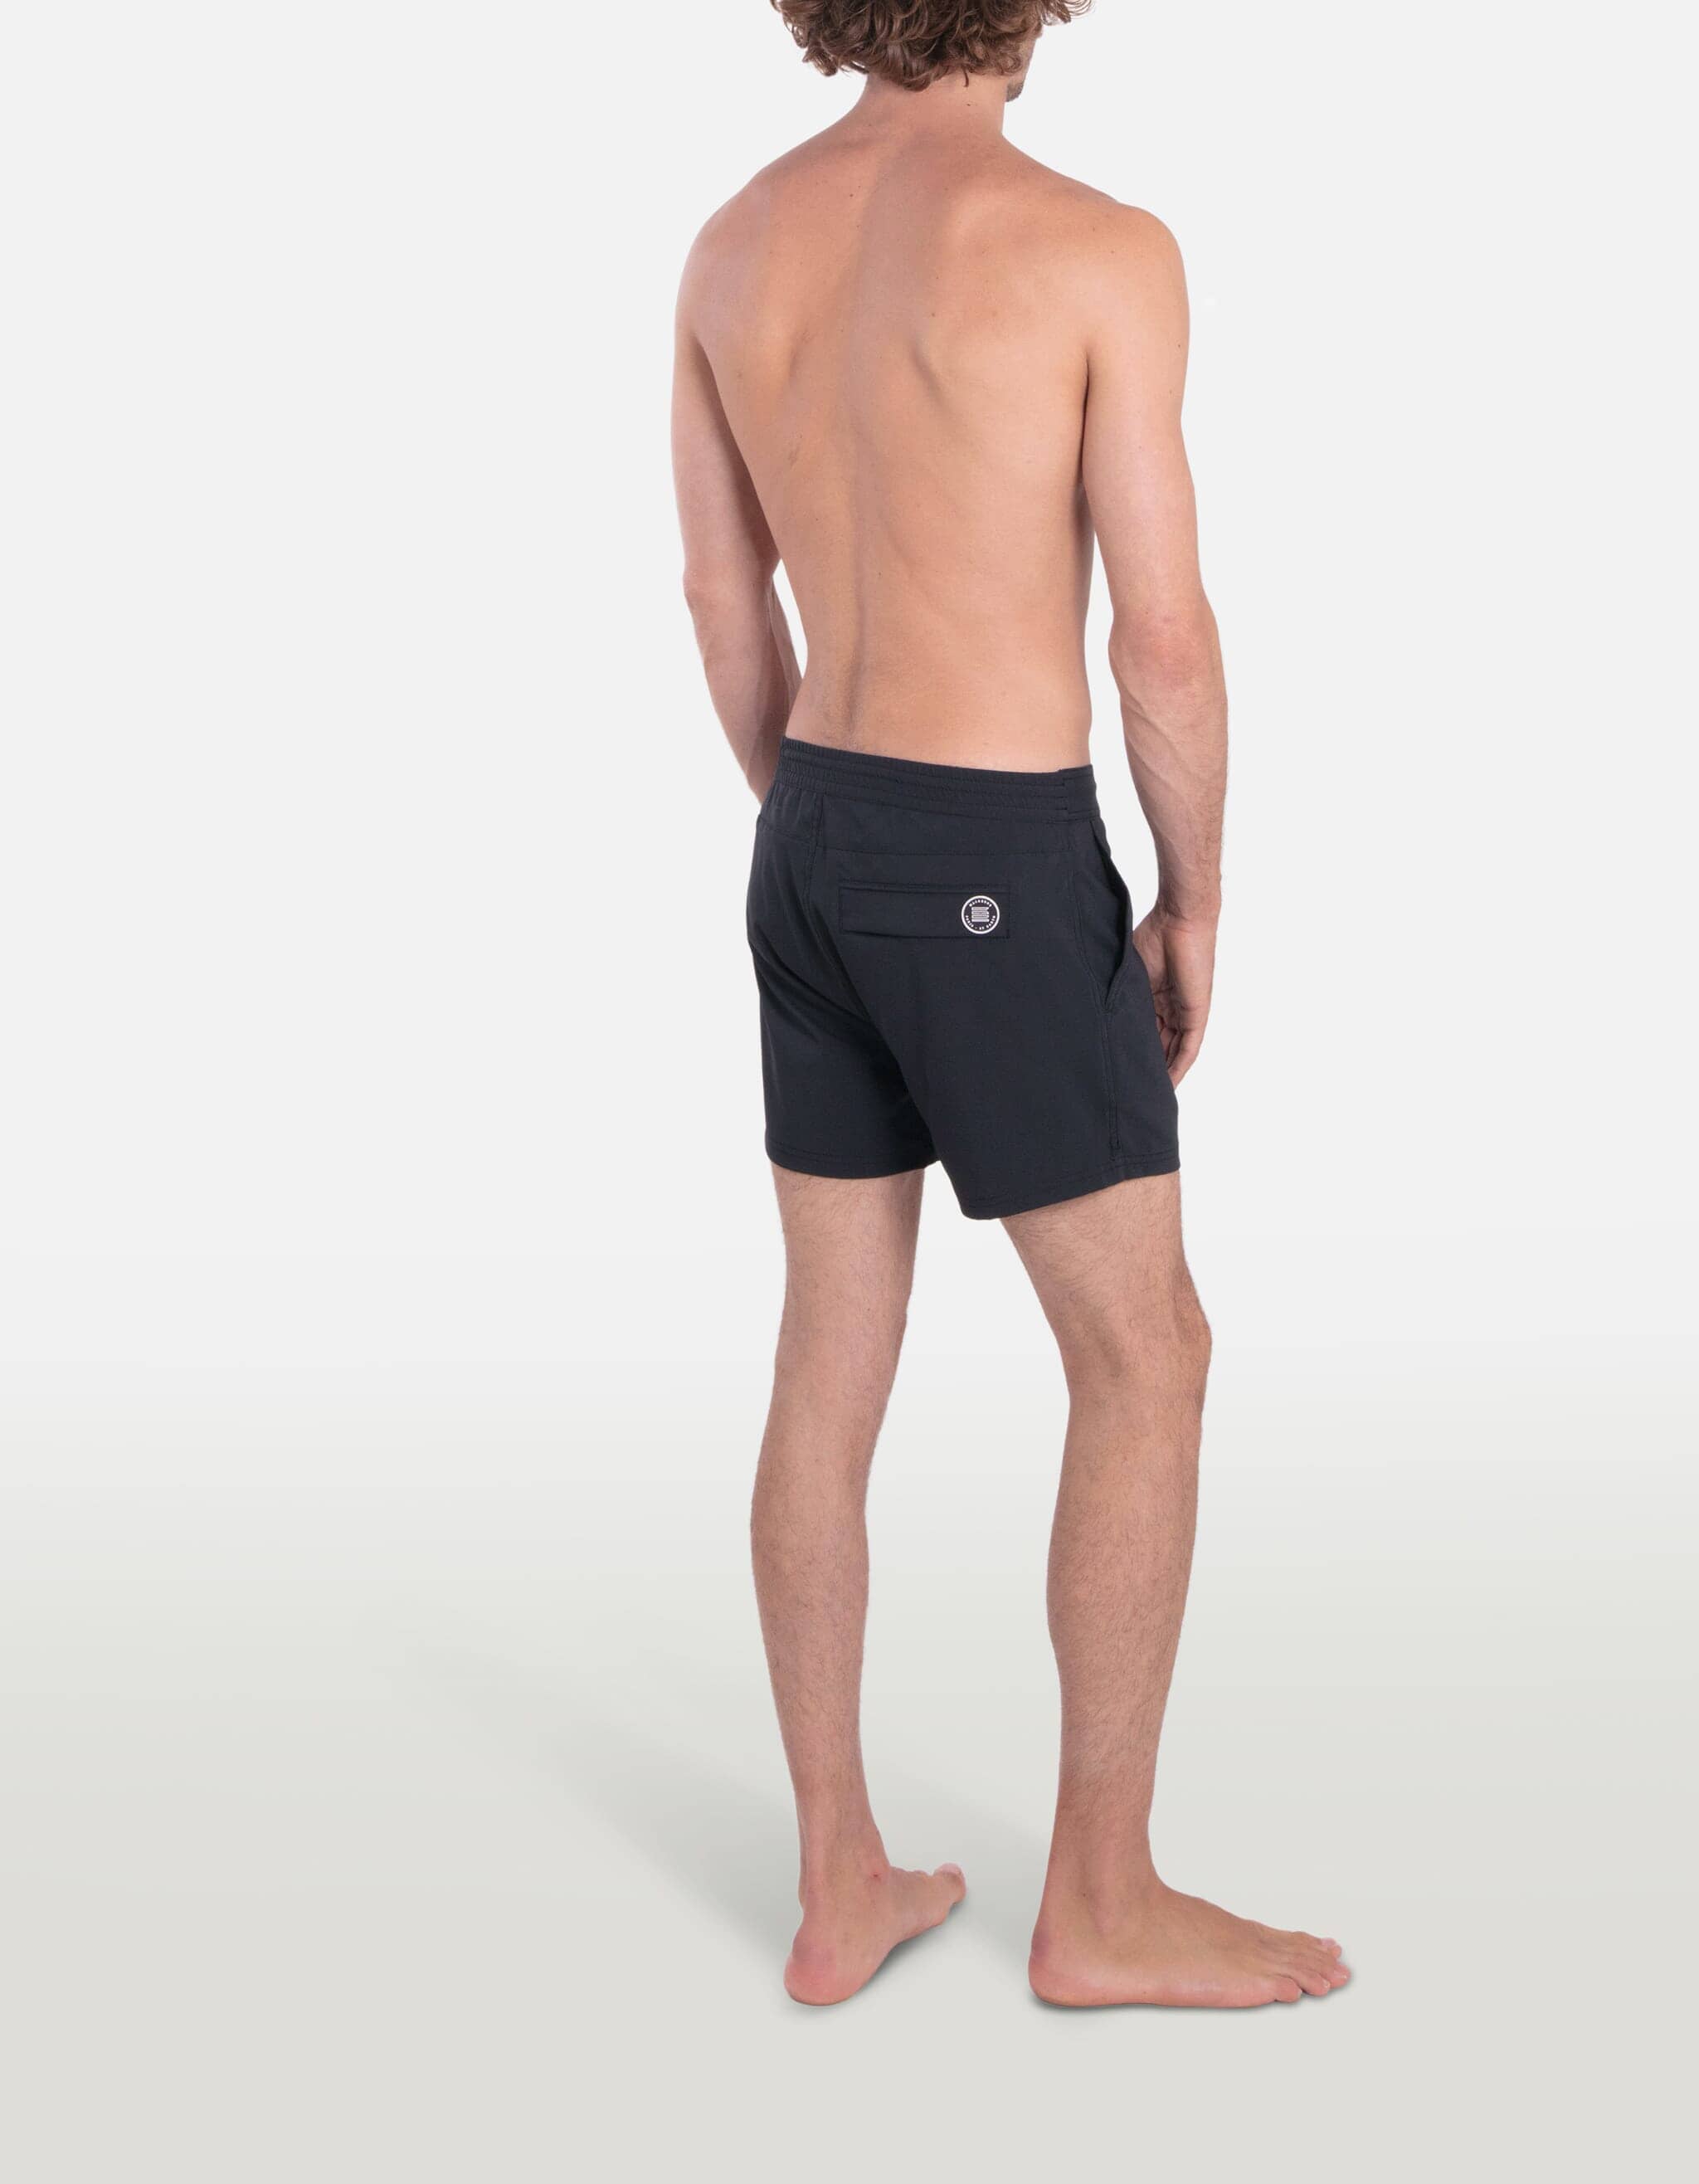 Ben - 00. Black Swim Shorts - Ben MACKEENE 